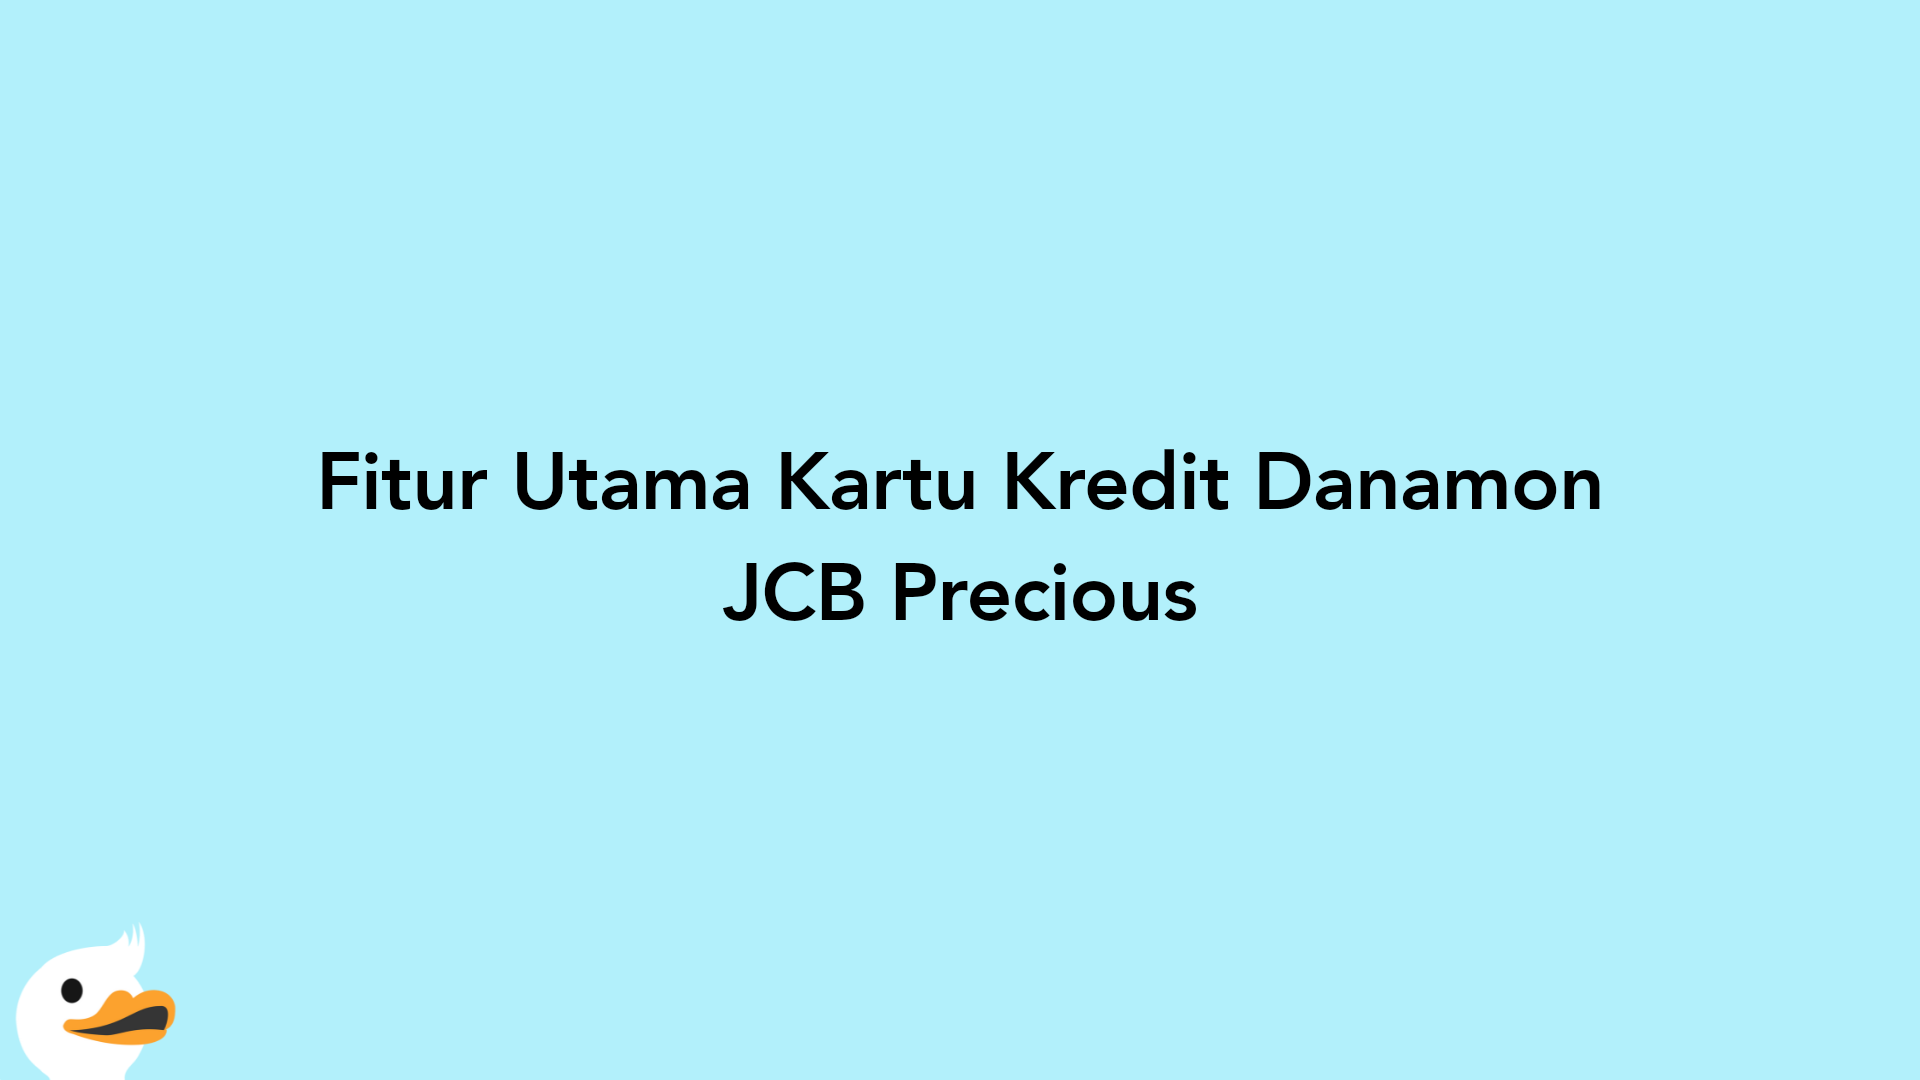 Fitur Utama Kartu Kredit Danamon JCB Precious